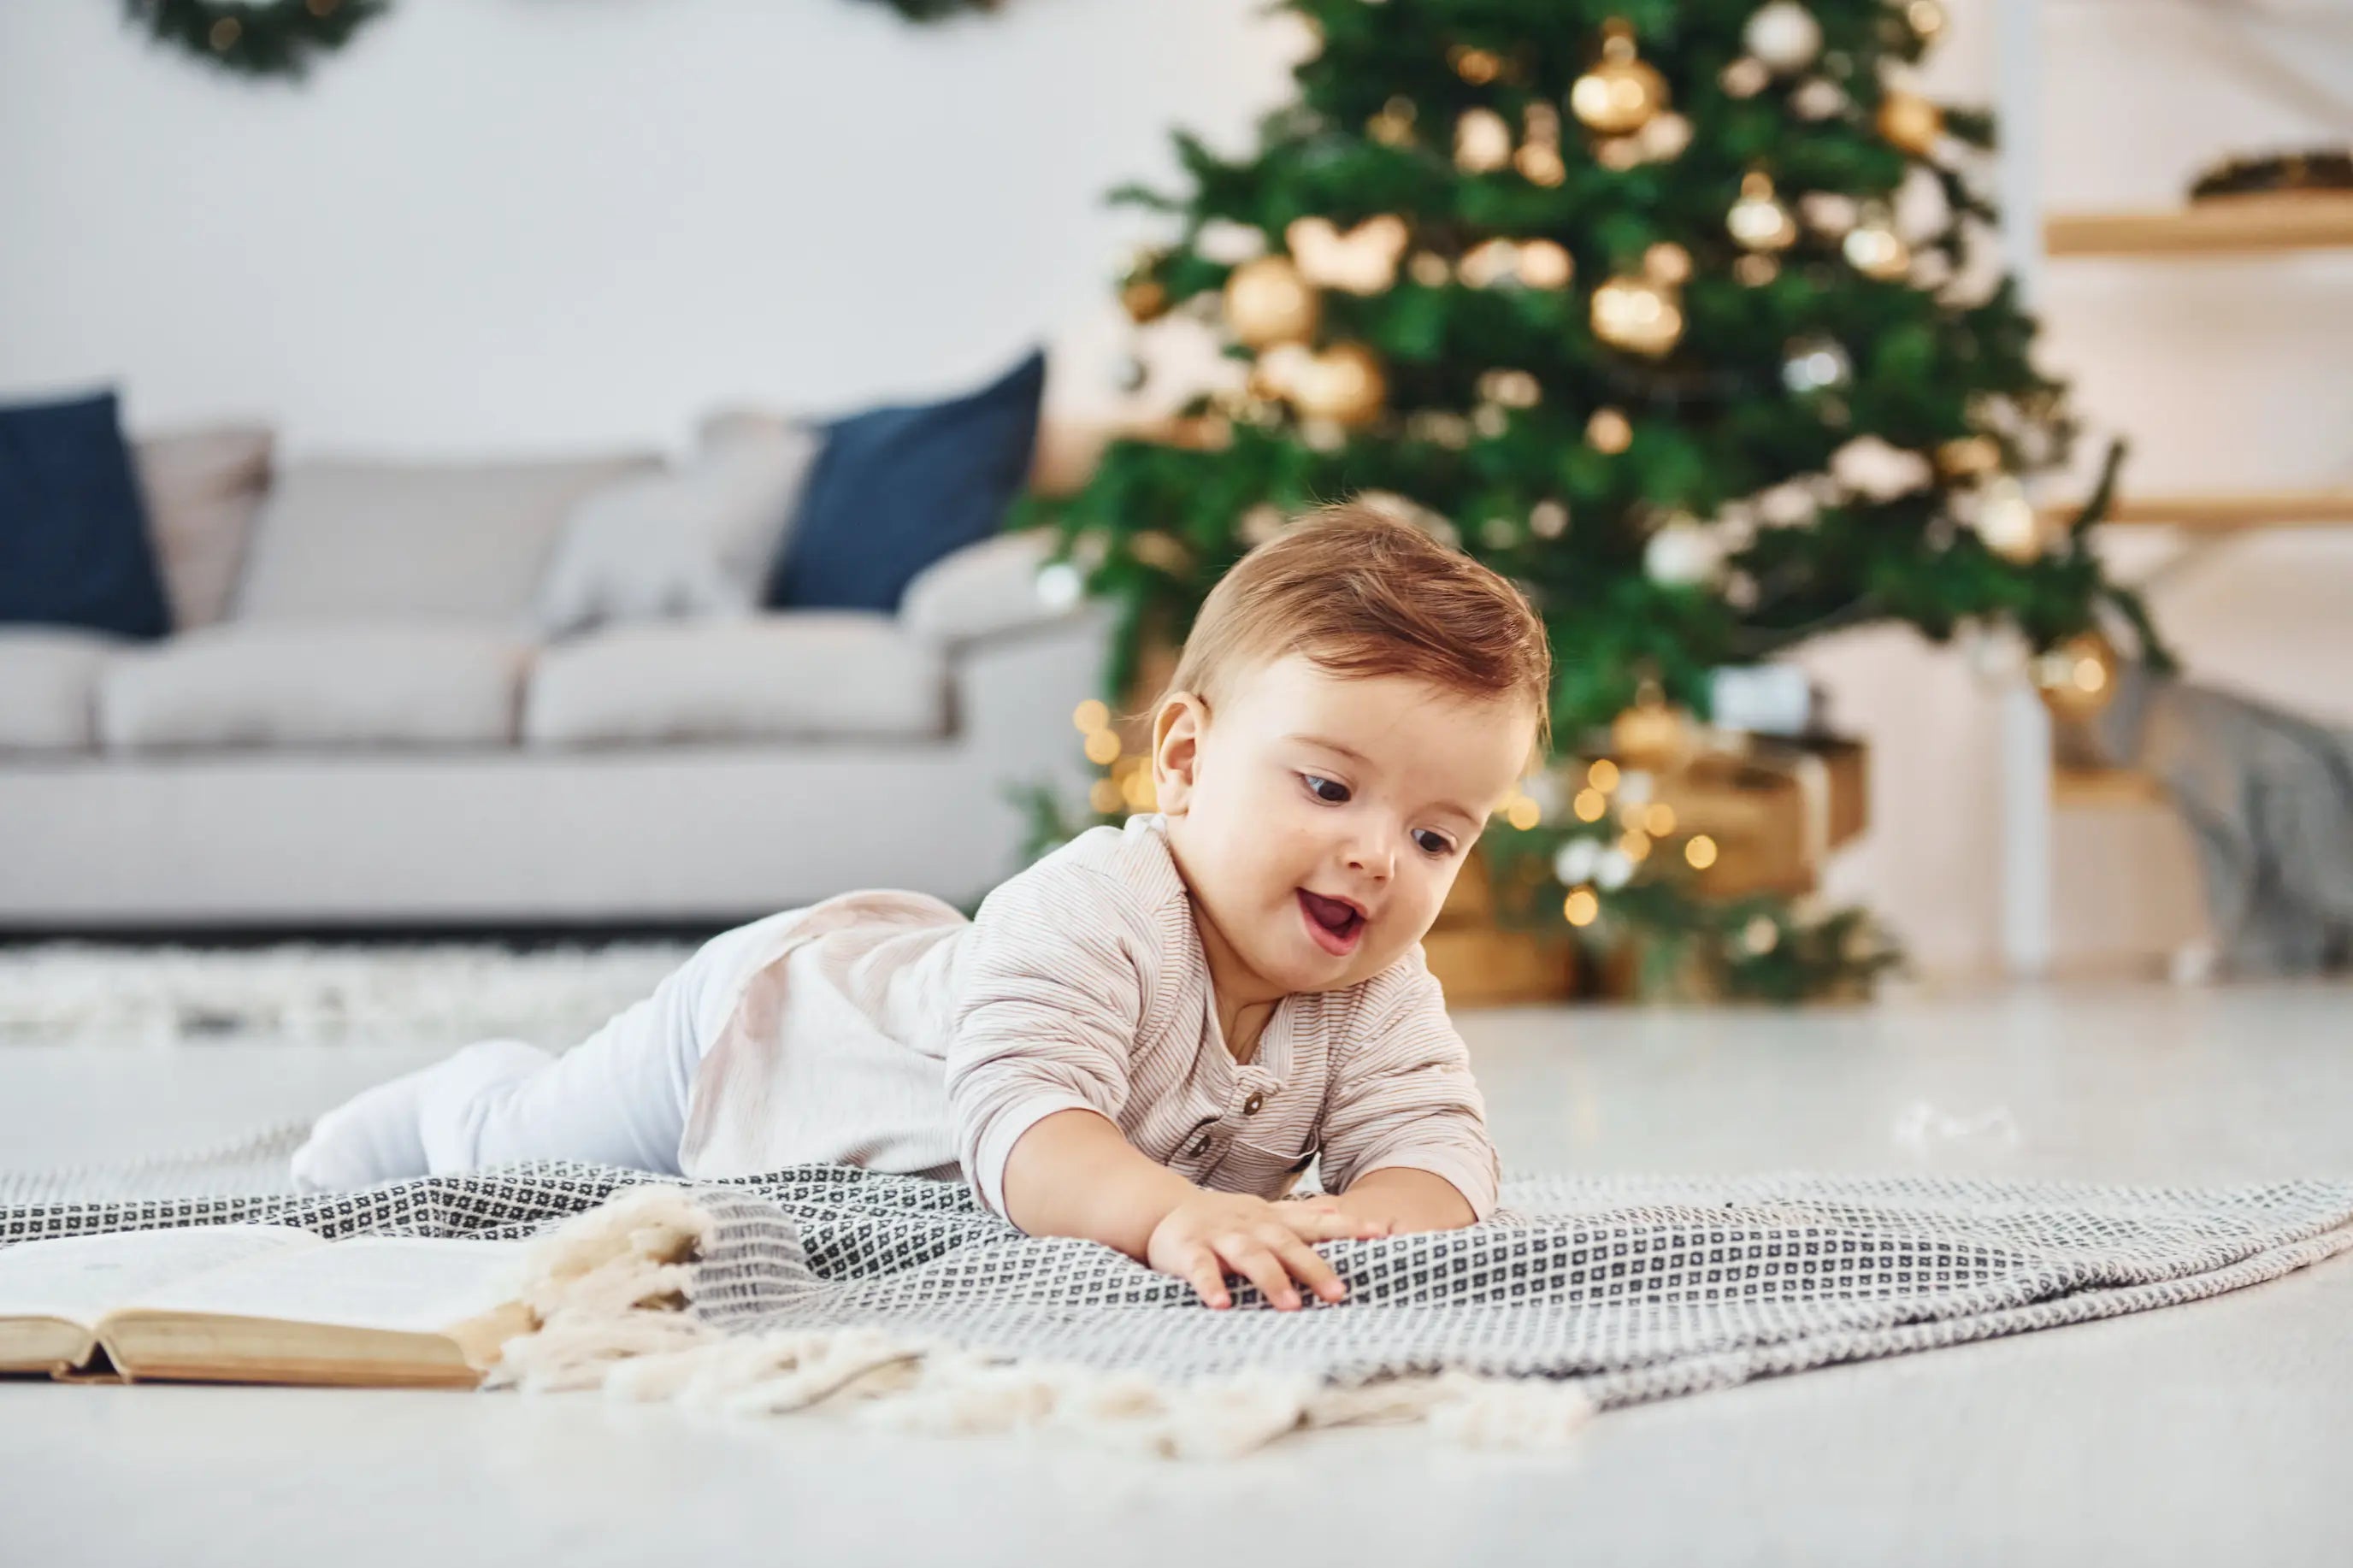 I migliori regali per neonati: guida natalizia